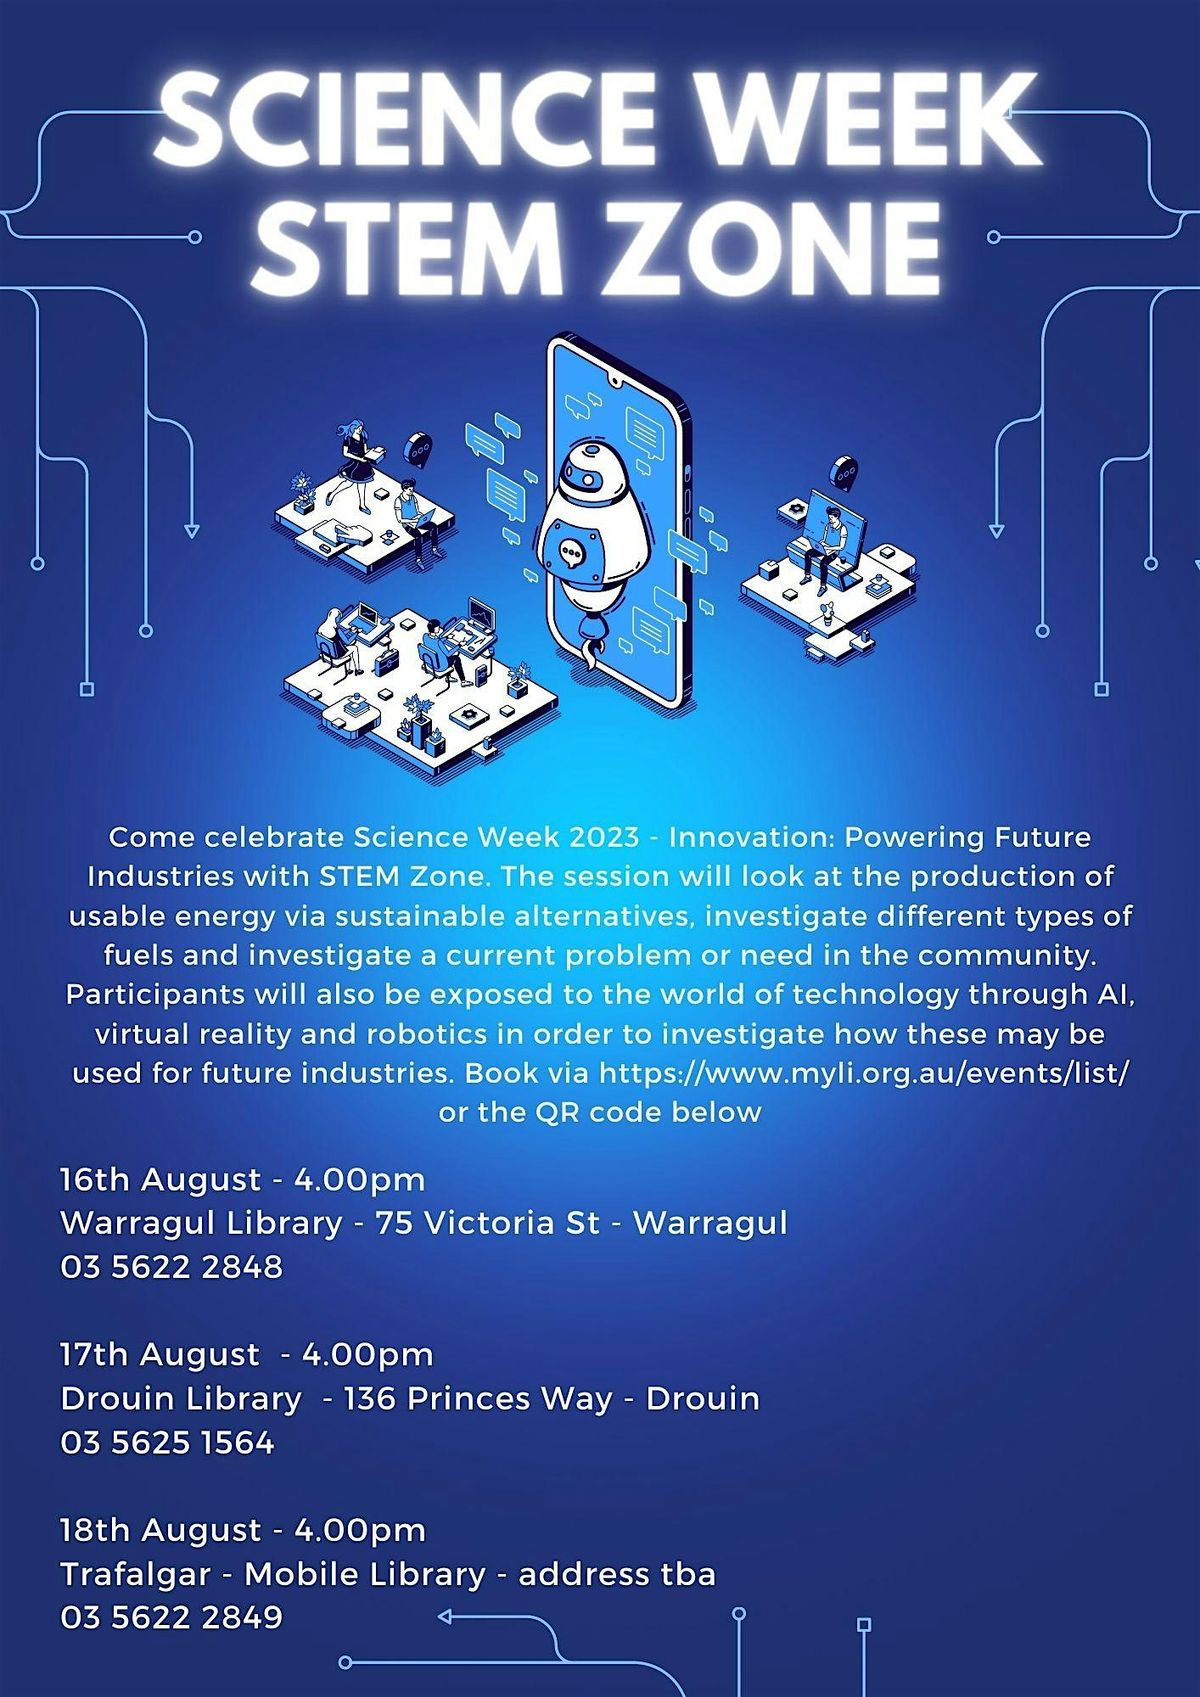 Warragul Library - STEM Zone Science Week